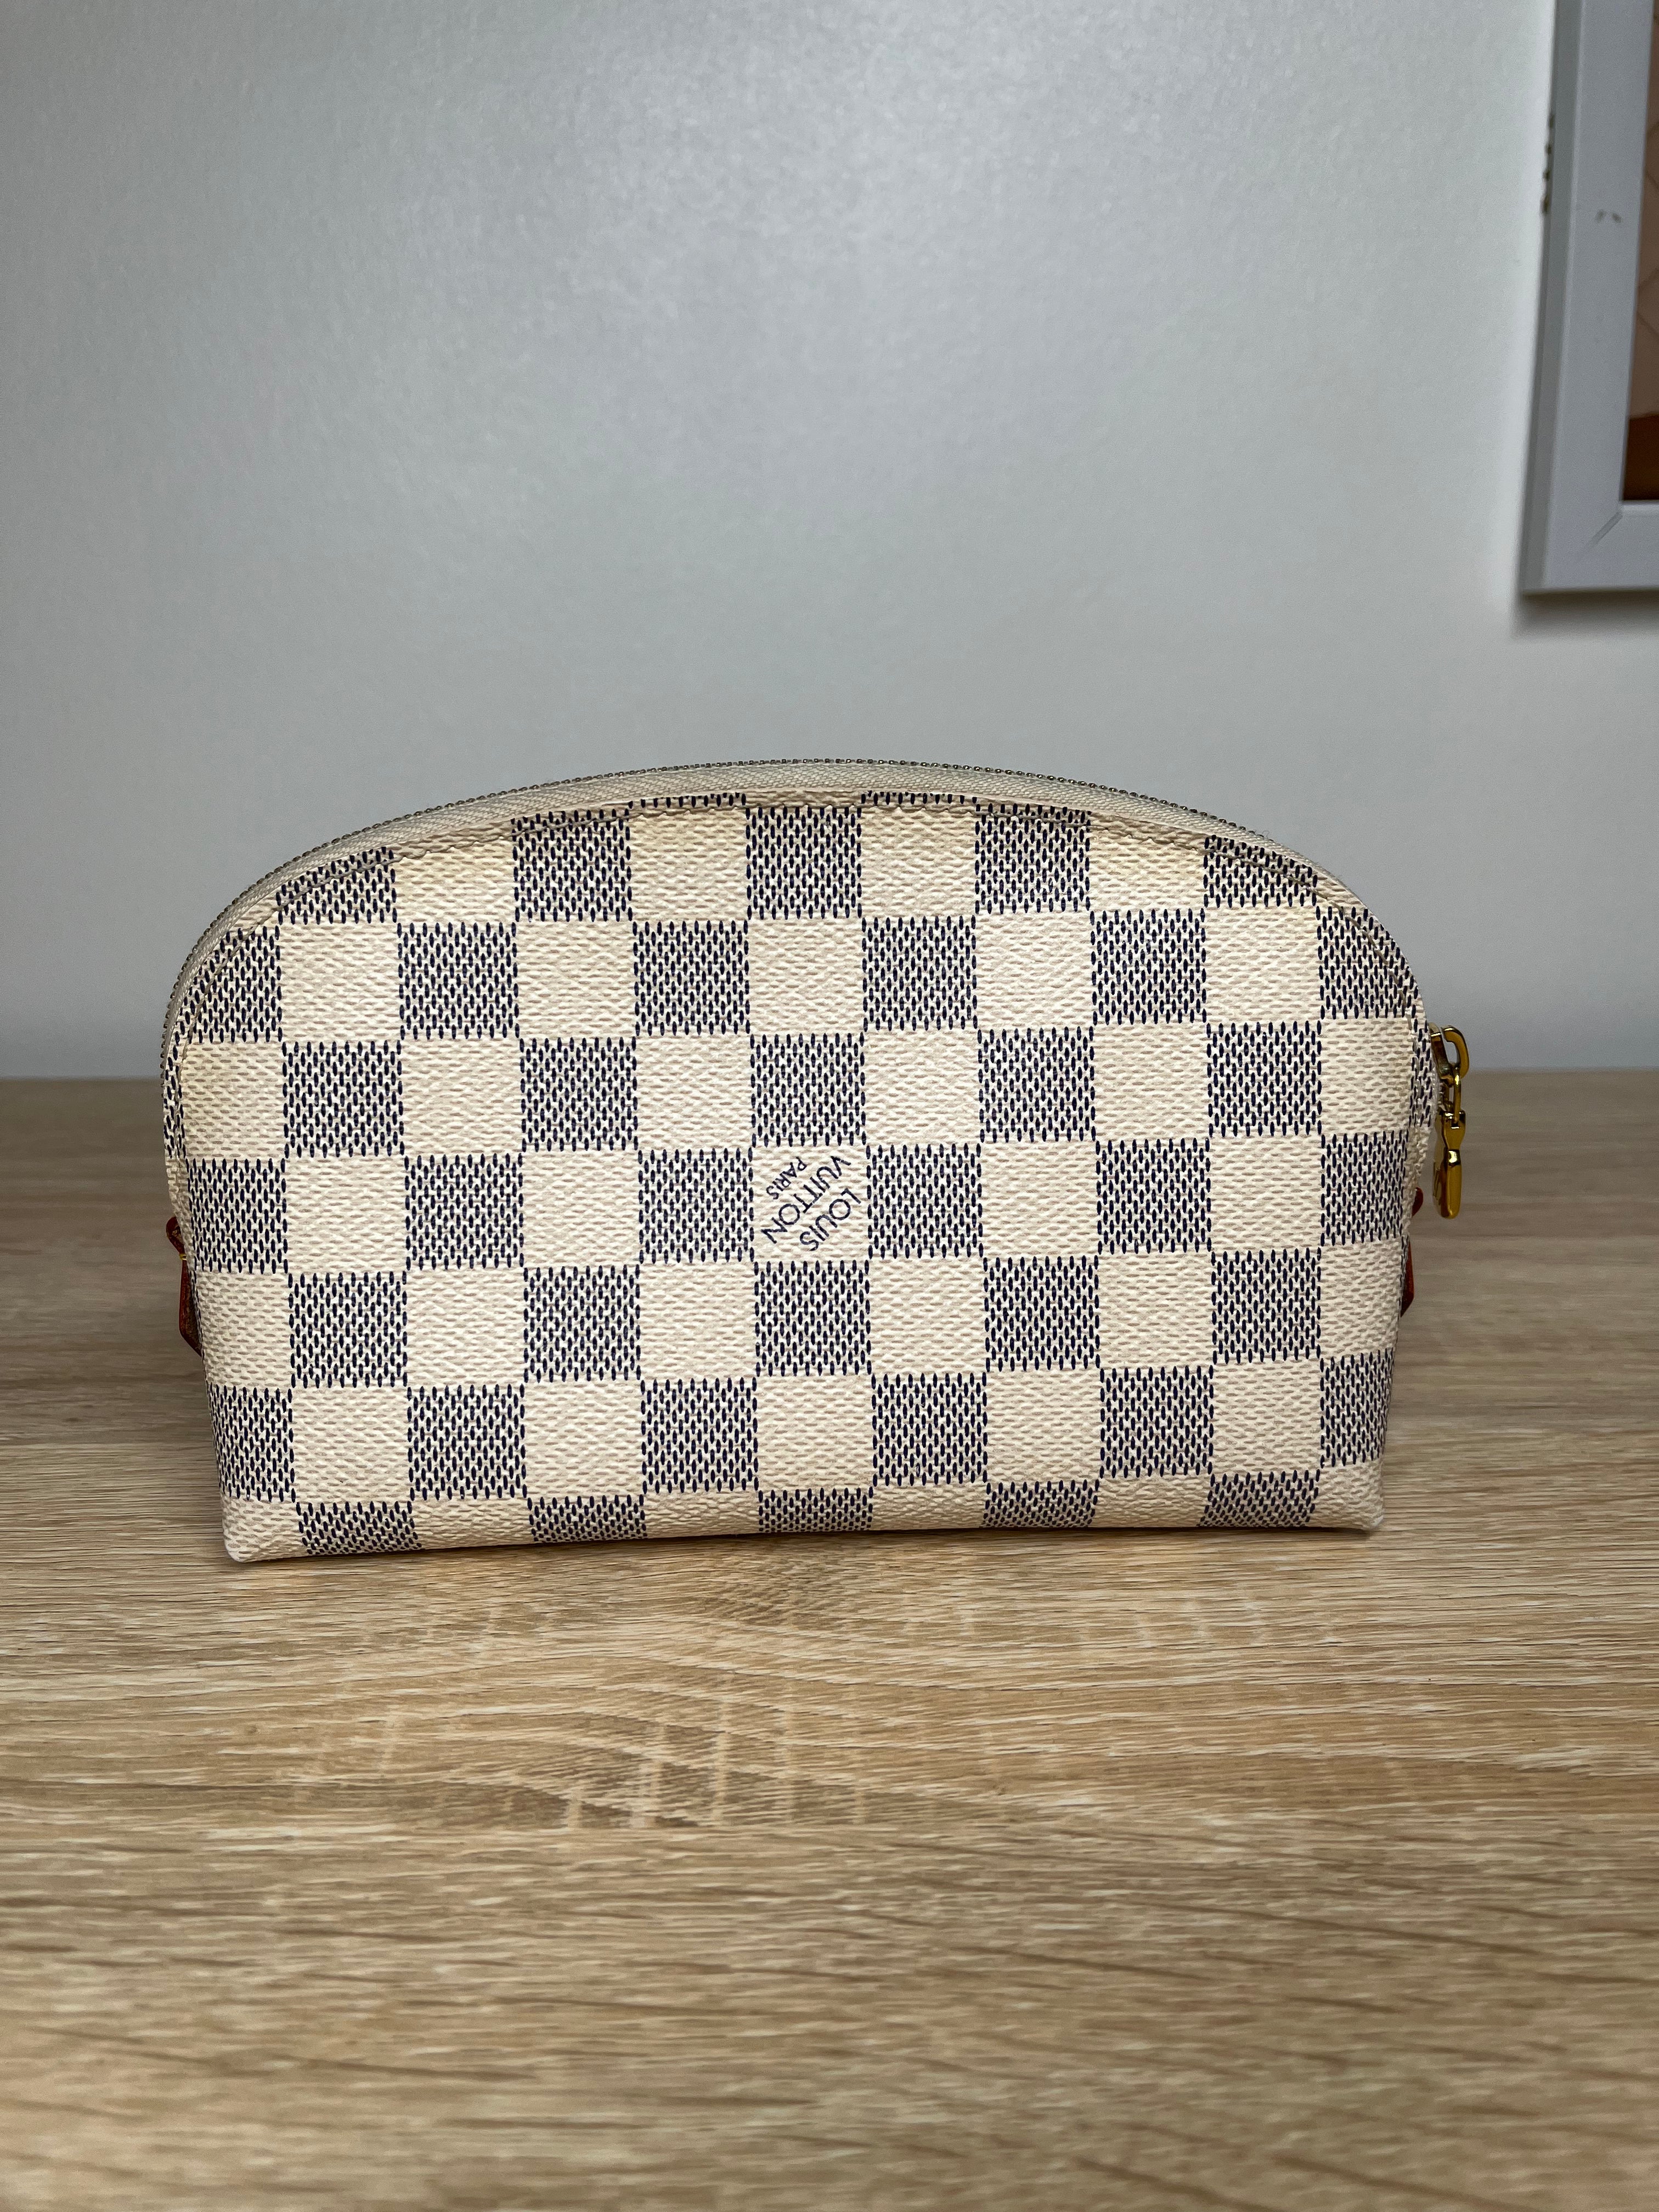 Louis Vuitton Makeup Pouch Damier Azur Handbag, One Size